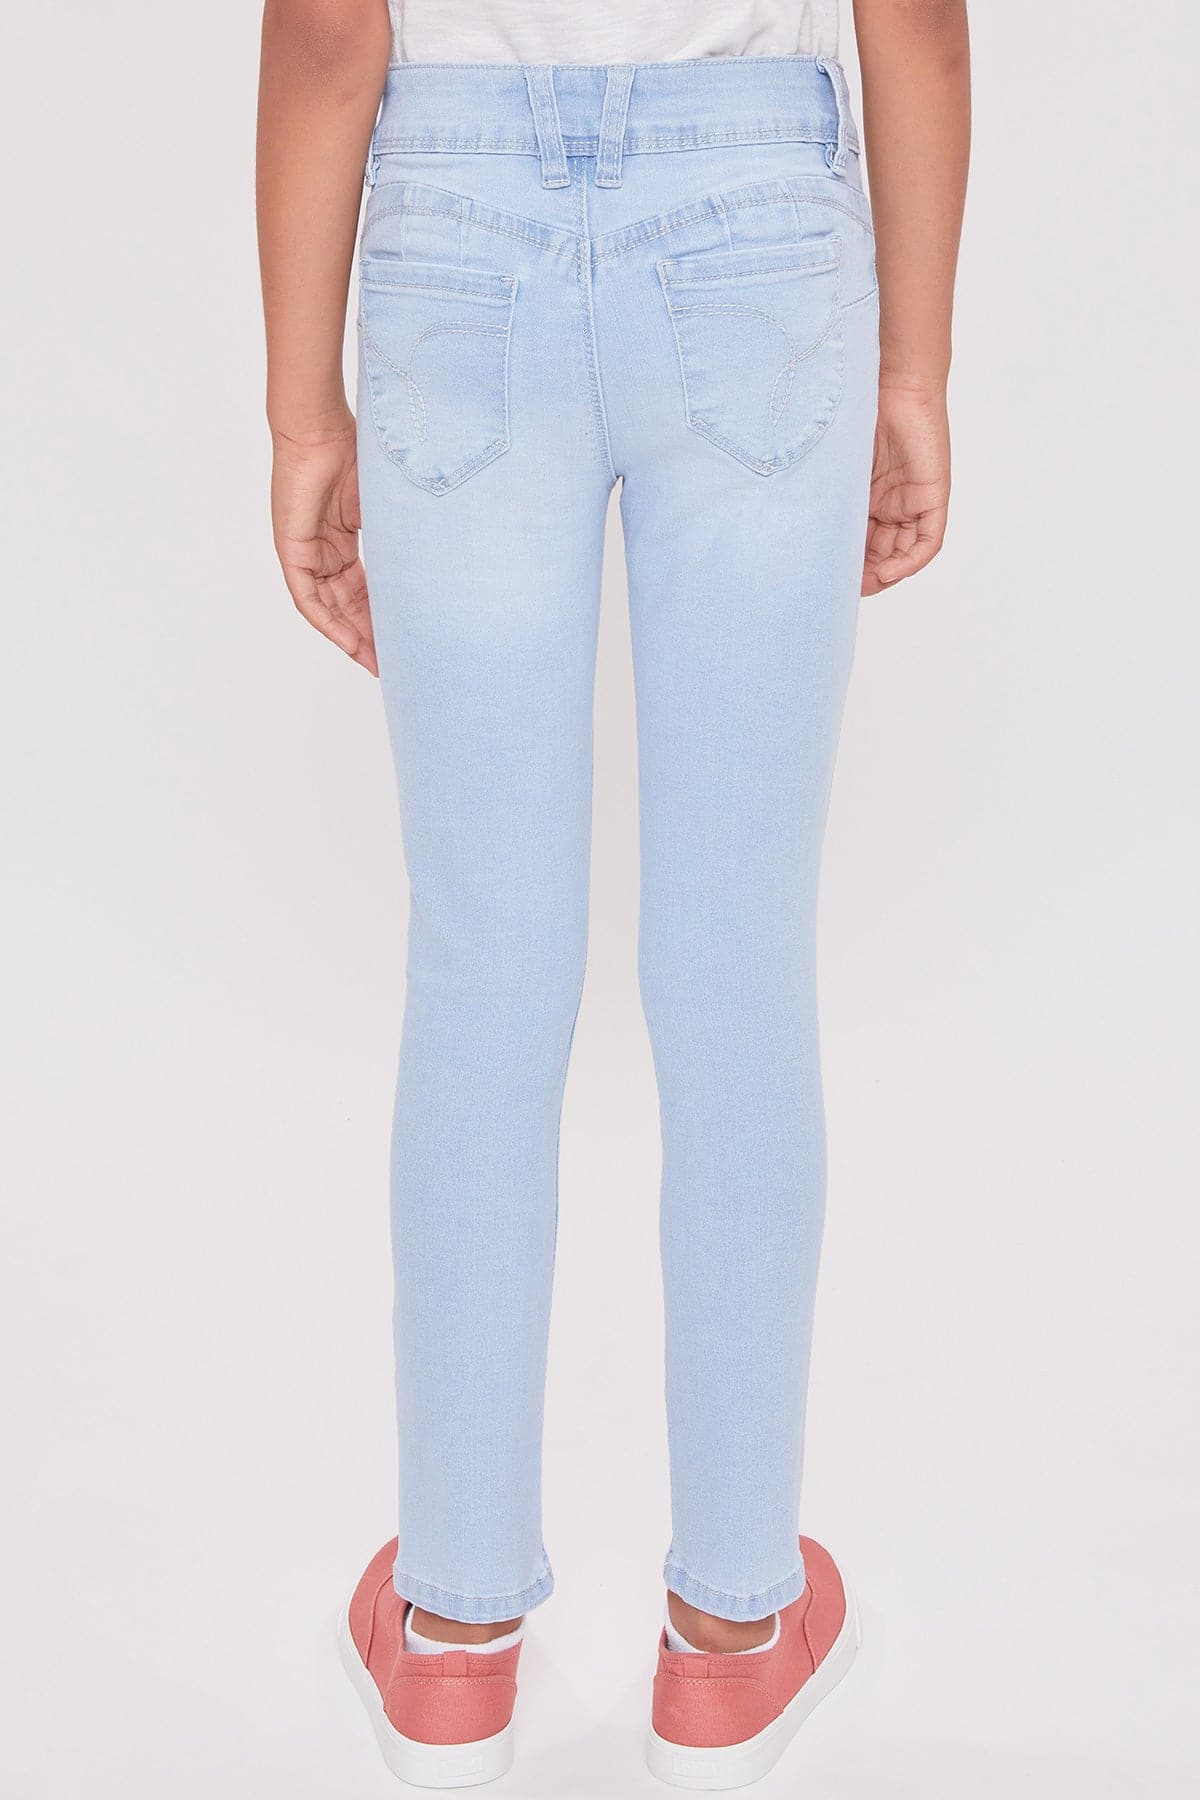 Girls Sustainable WannaBettaFit Skinny Jeans